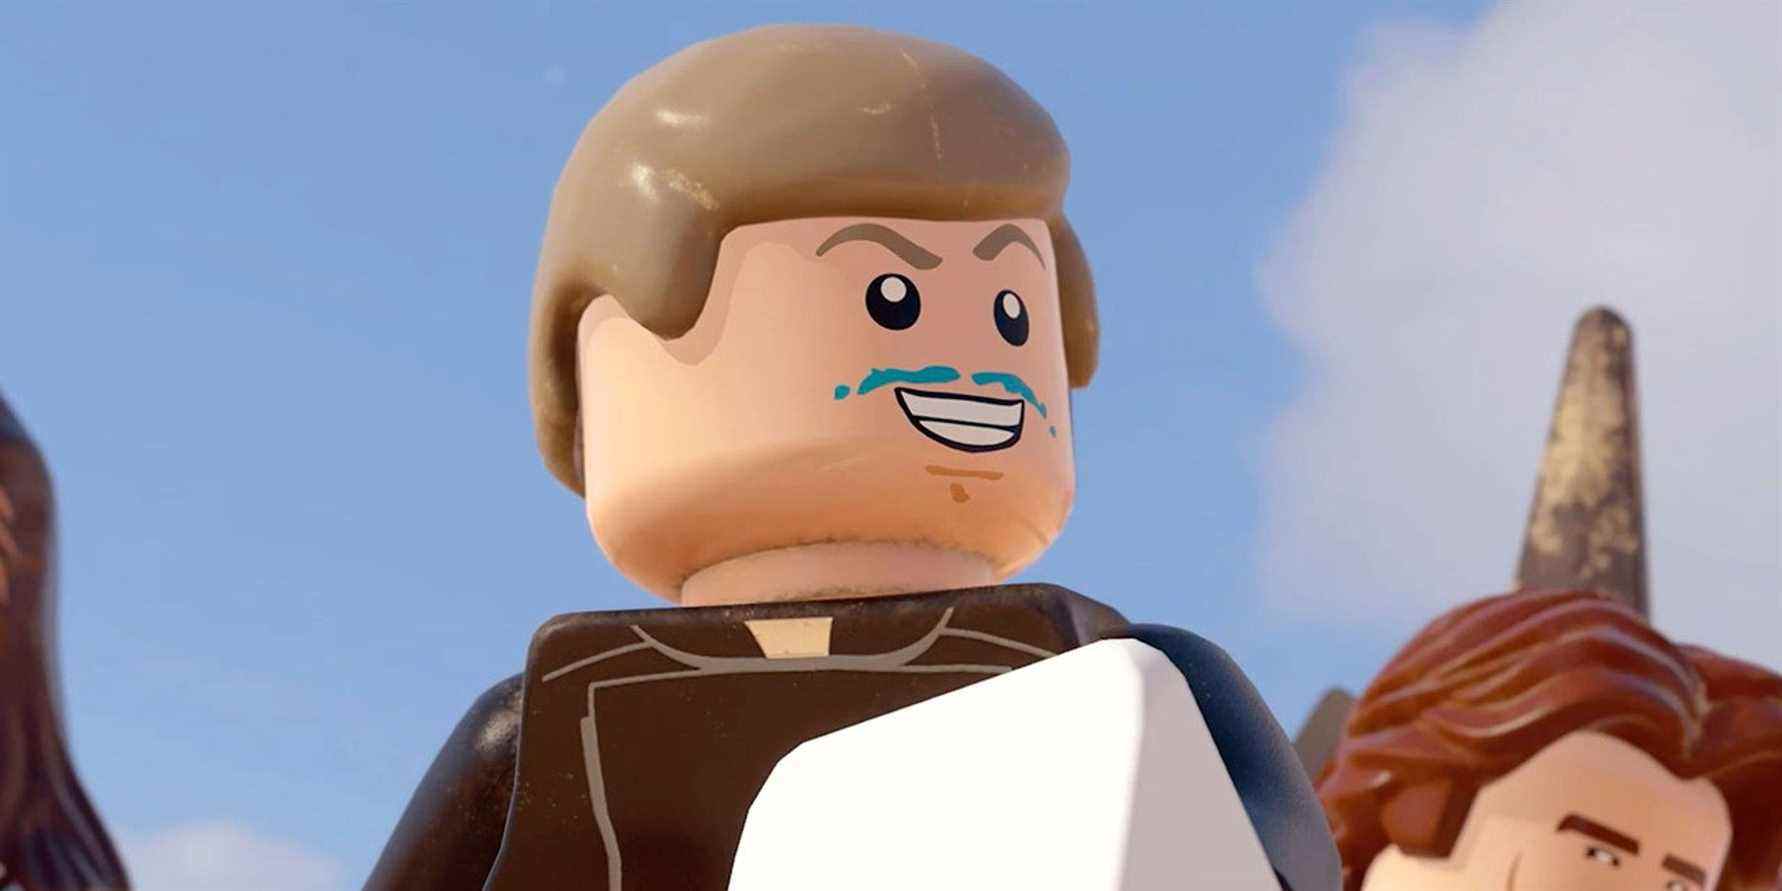 Les scalpeurs vendent la figurine Blue Milk Luke LEGO Star Wars à des prix ridicules